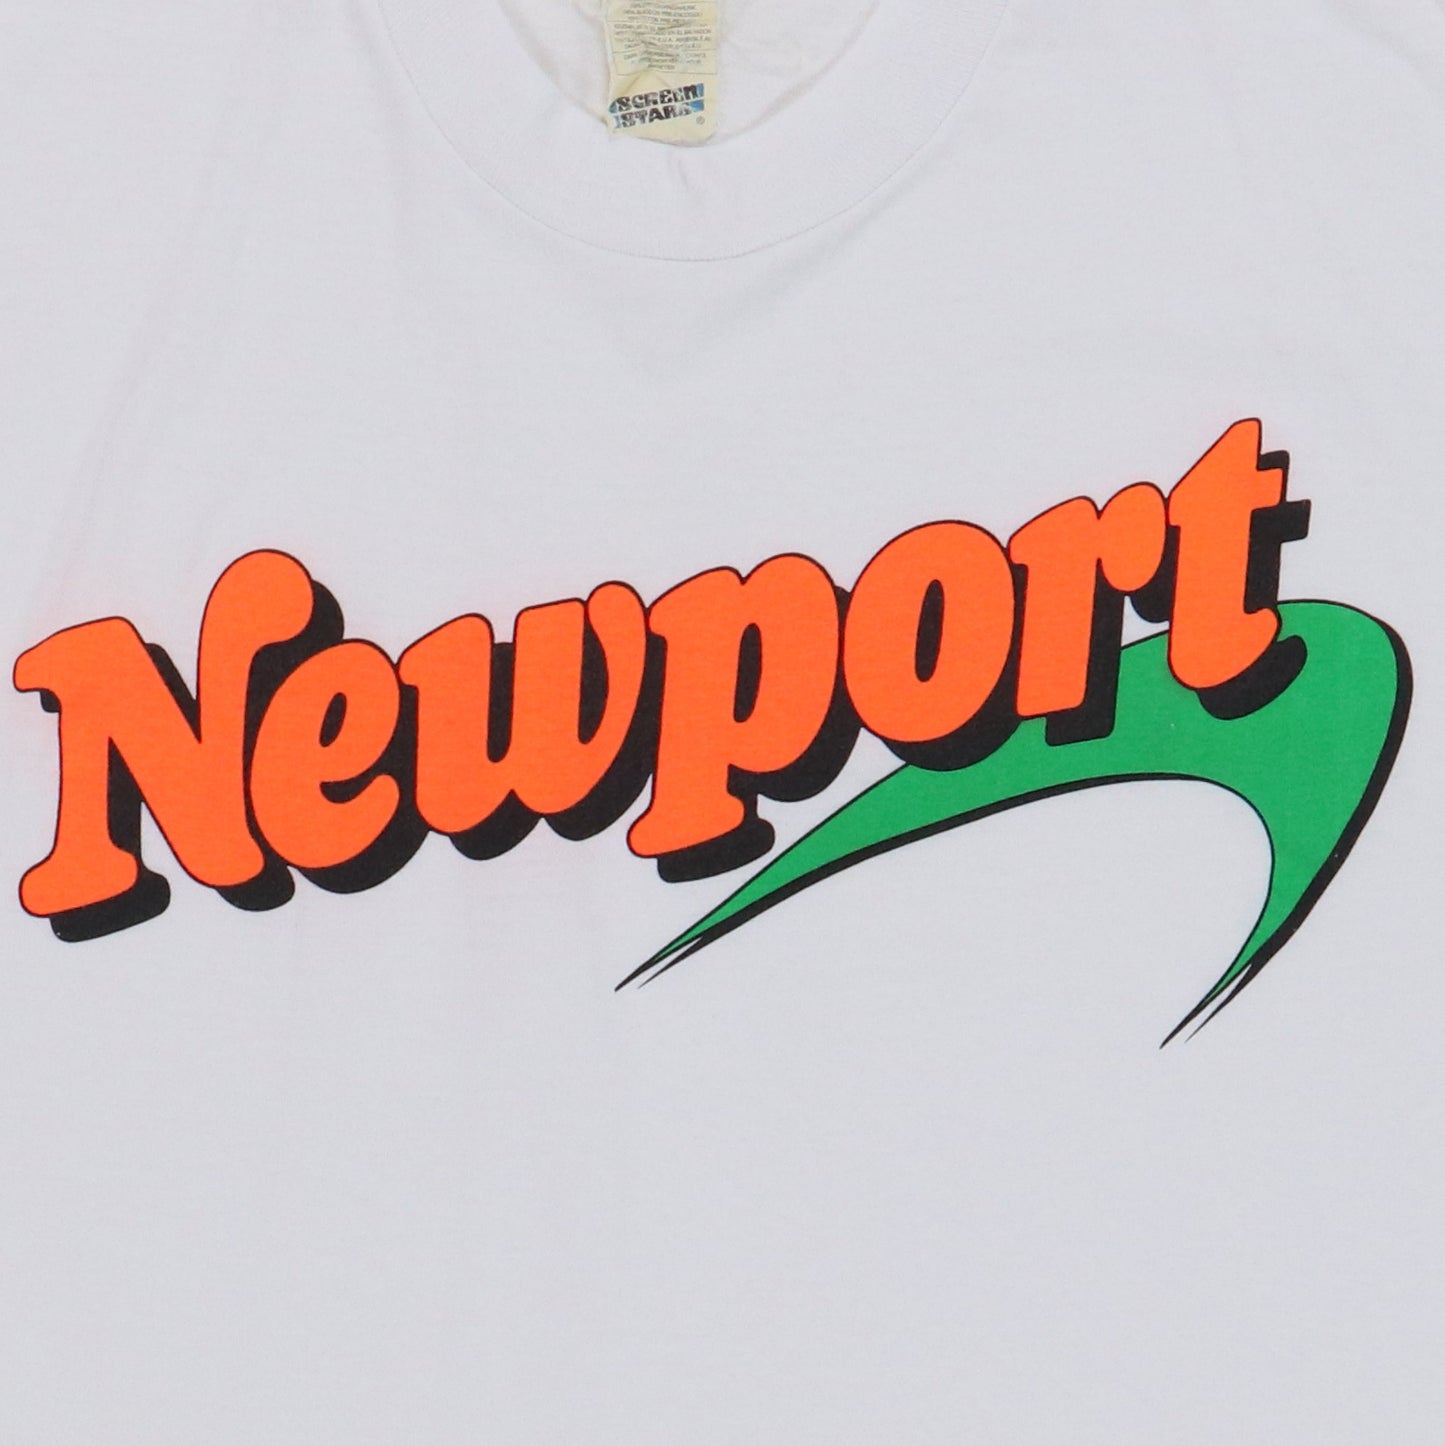 1990s Newport Shirt